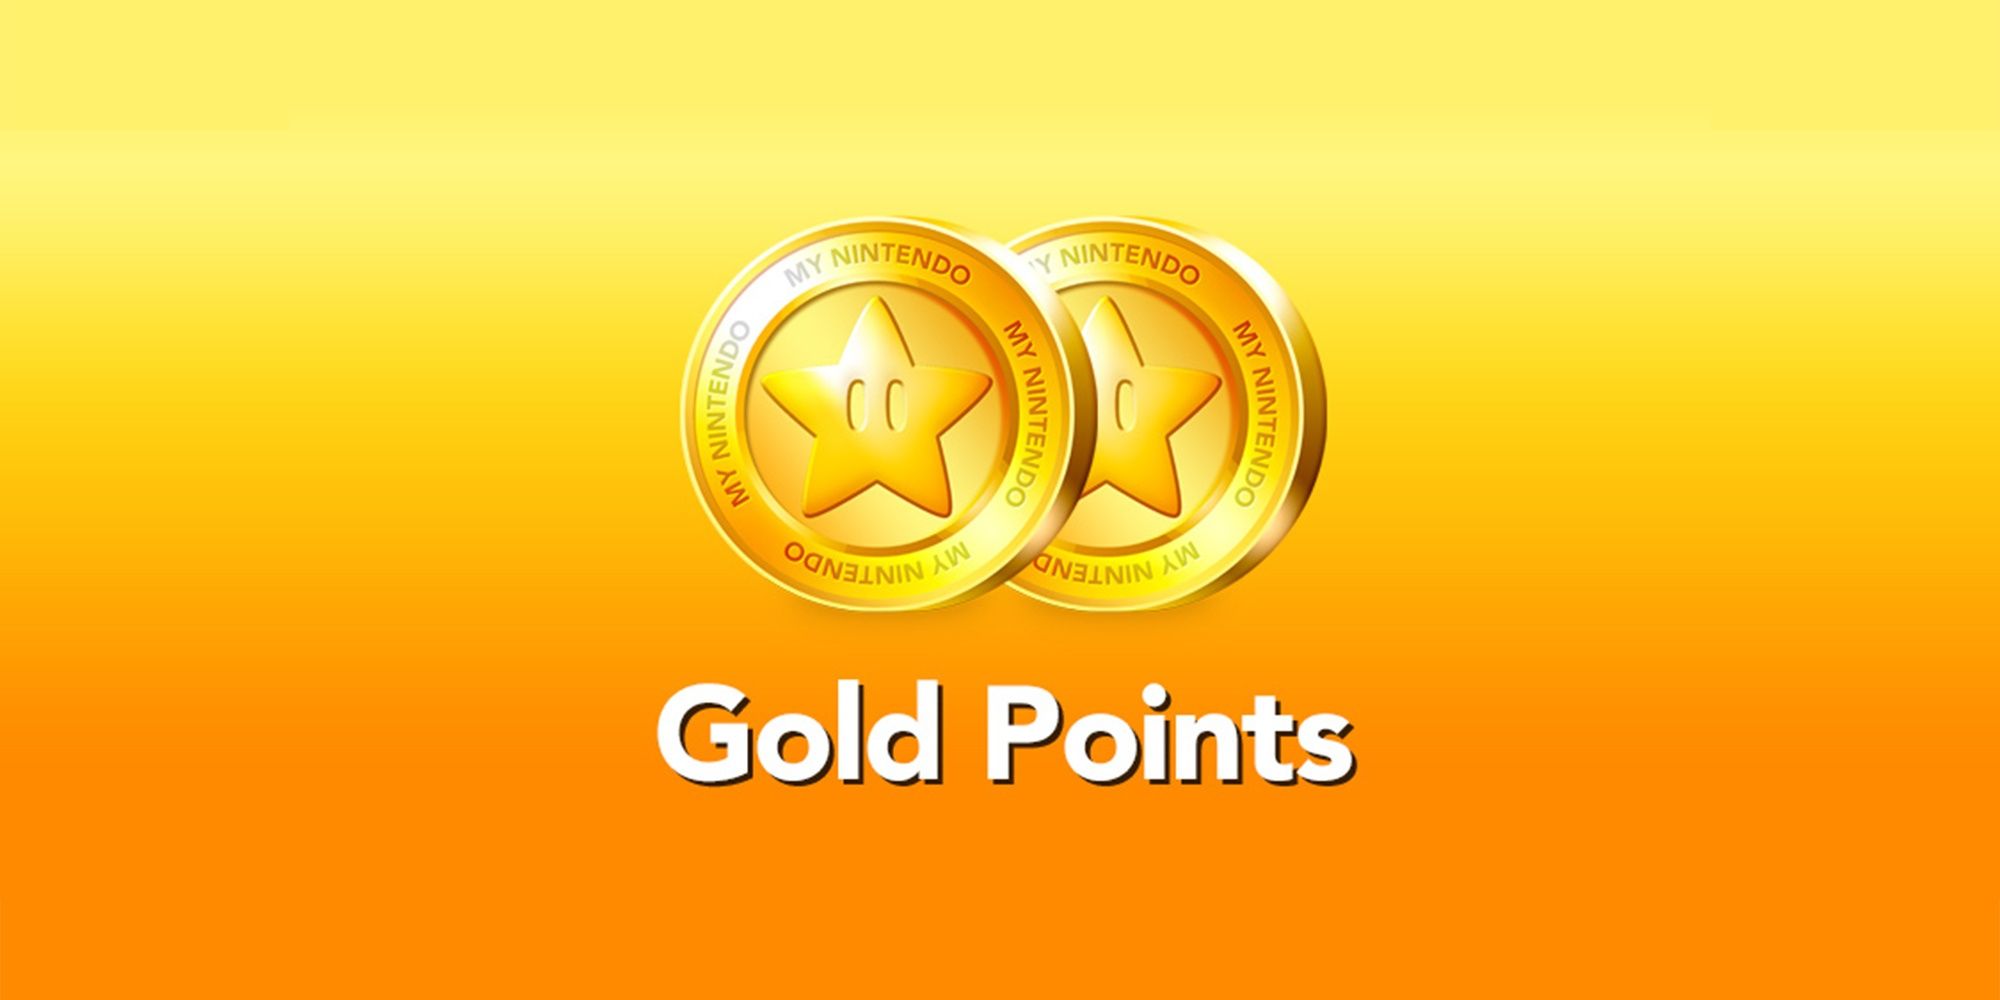 gold points from the nintendo reward scheme